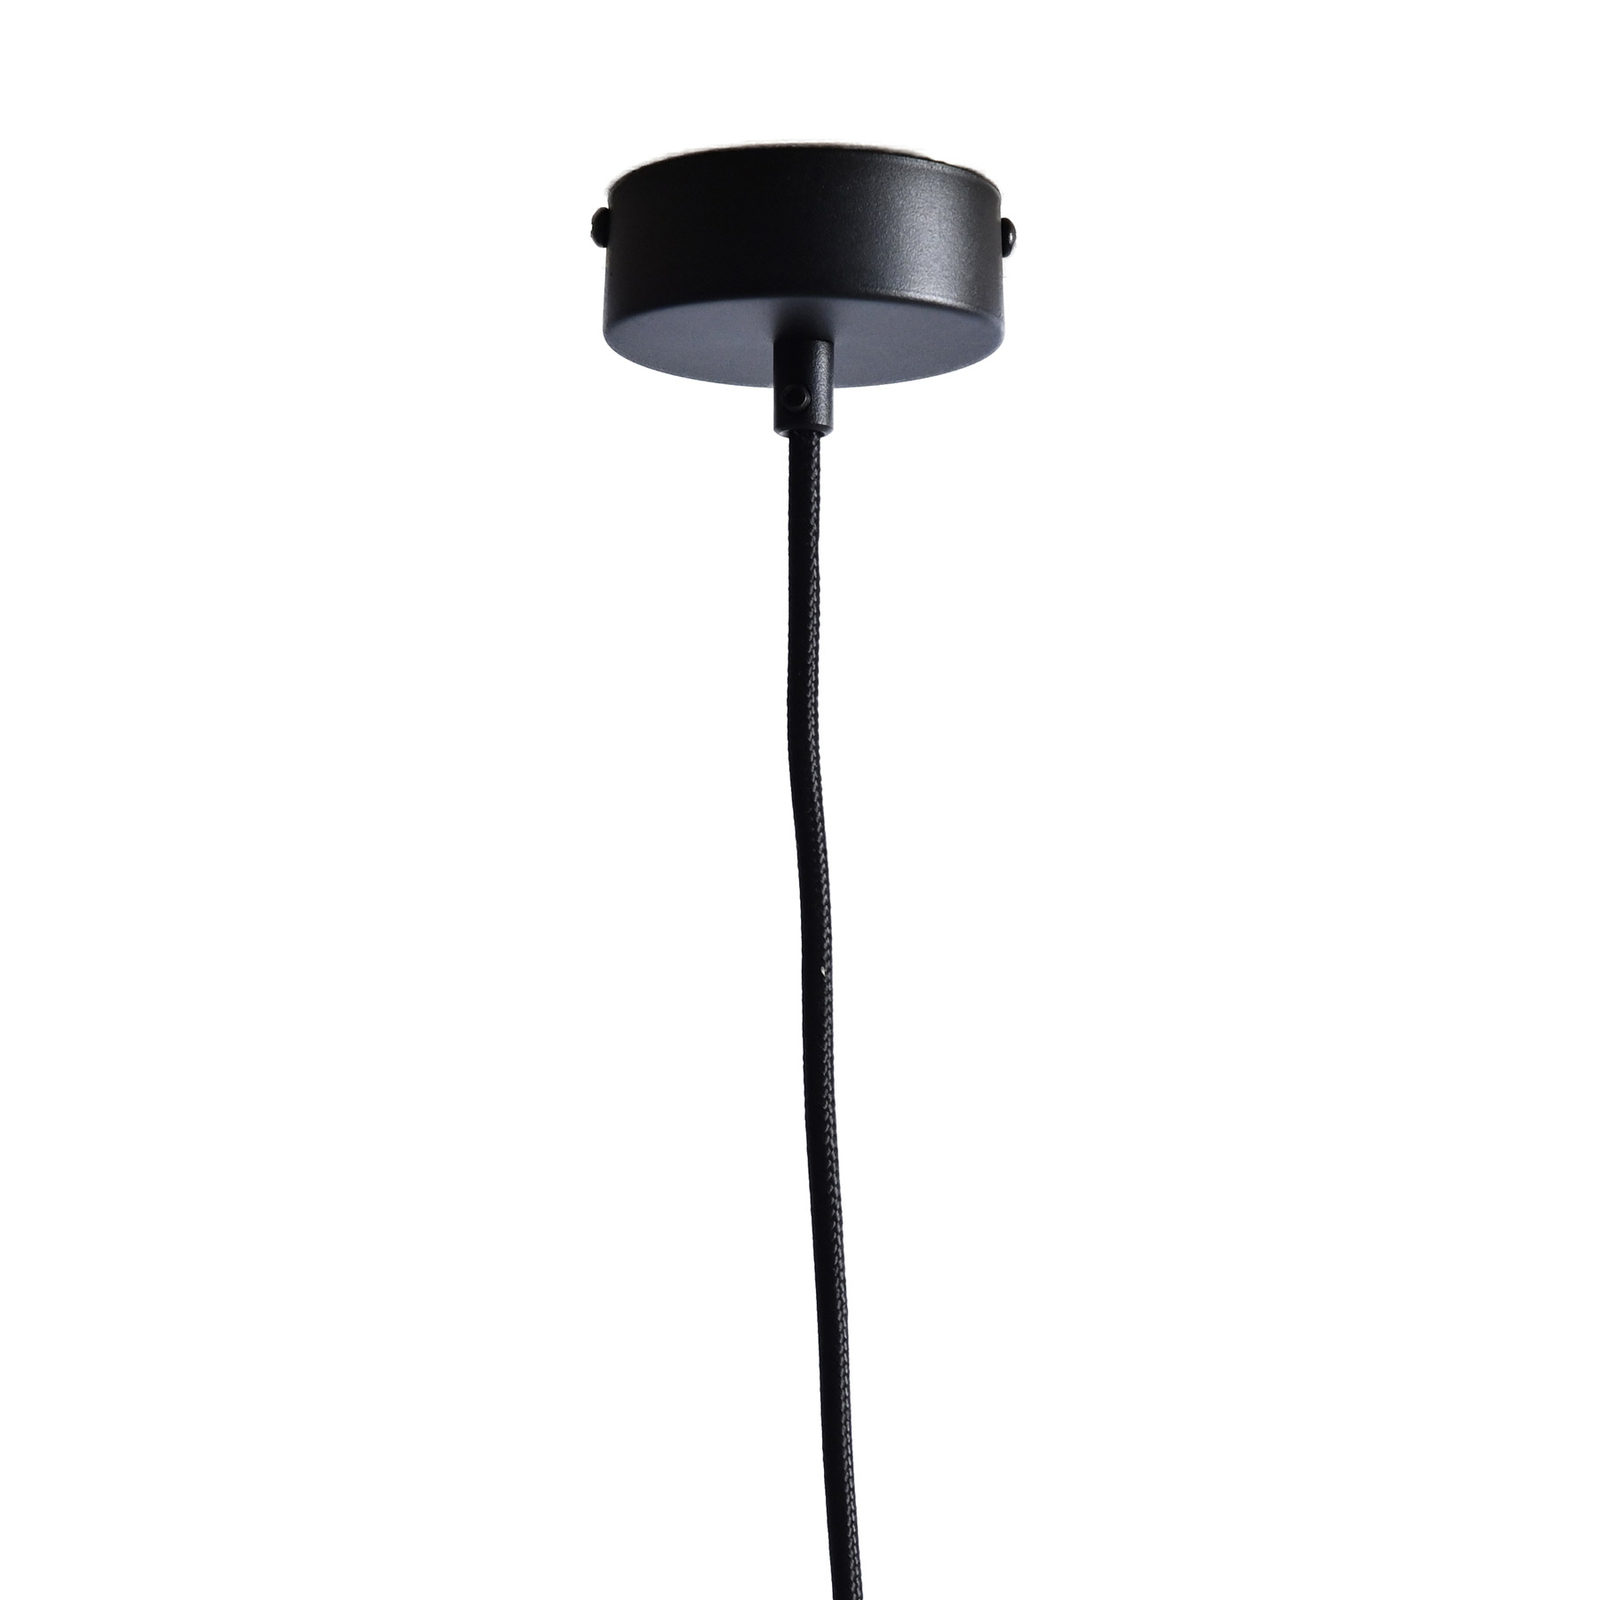 LeuchtNatur Nux hanglamp, olijf/zwart